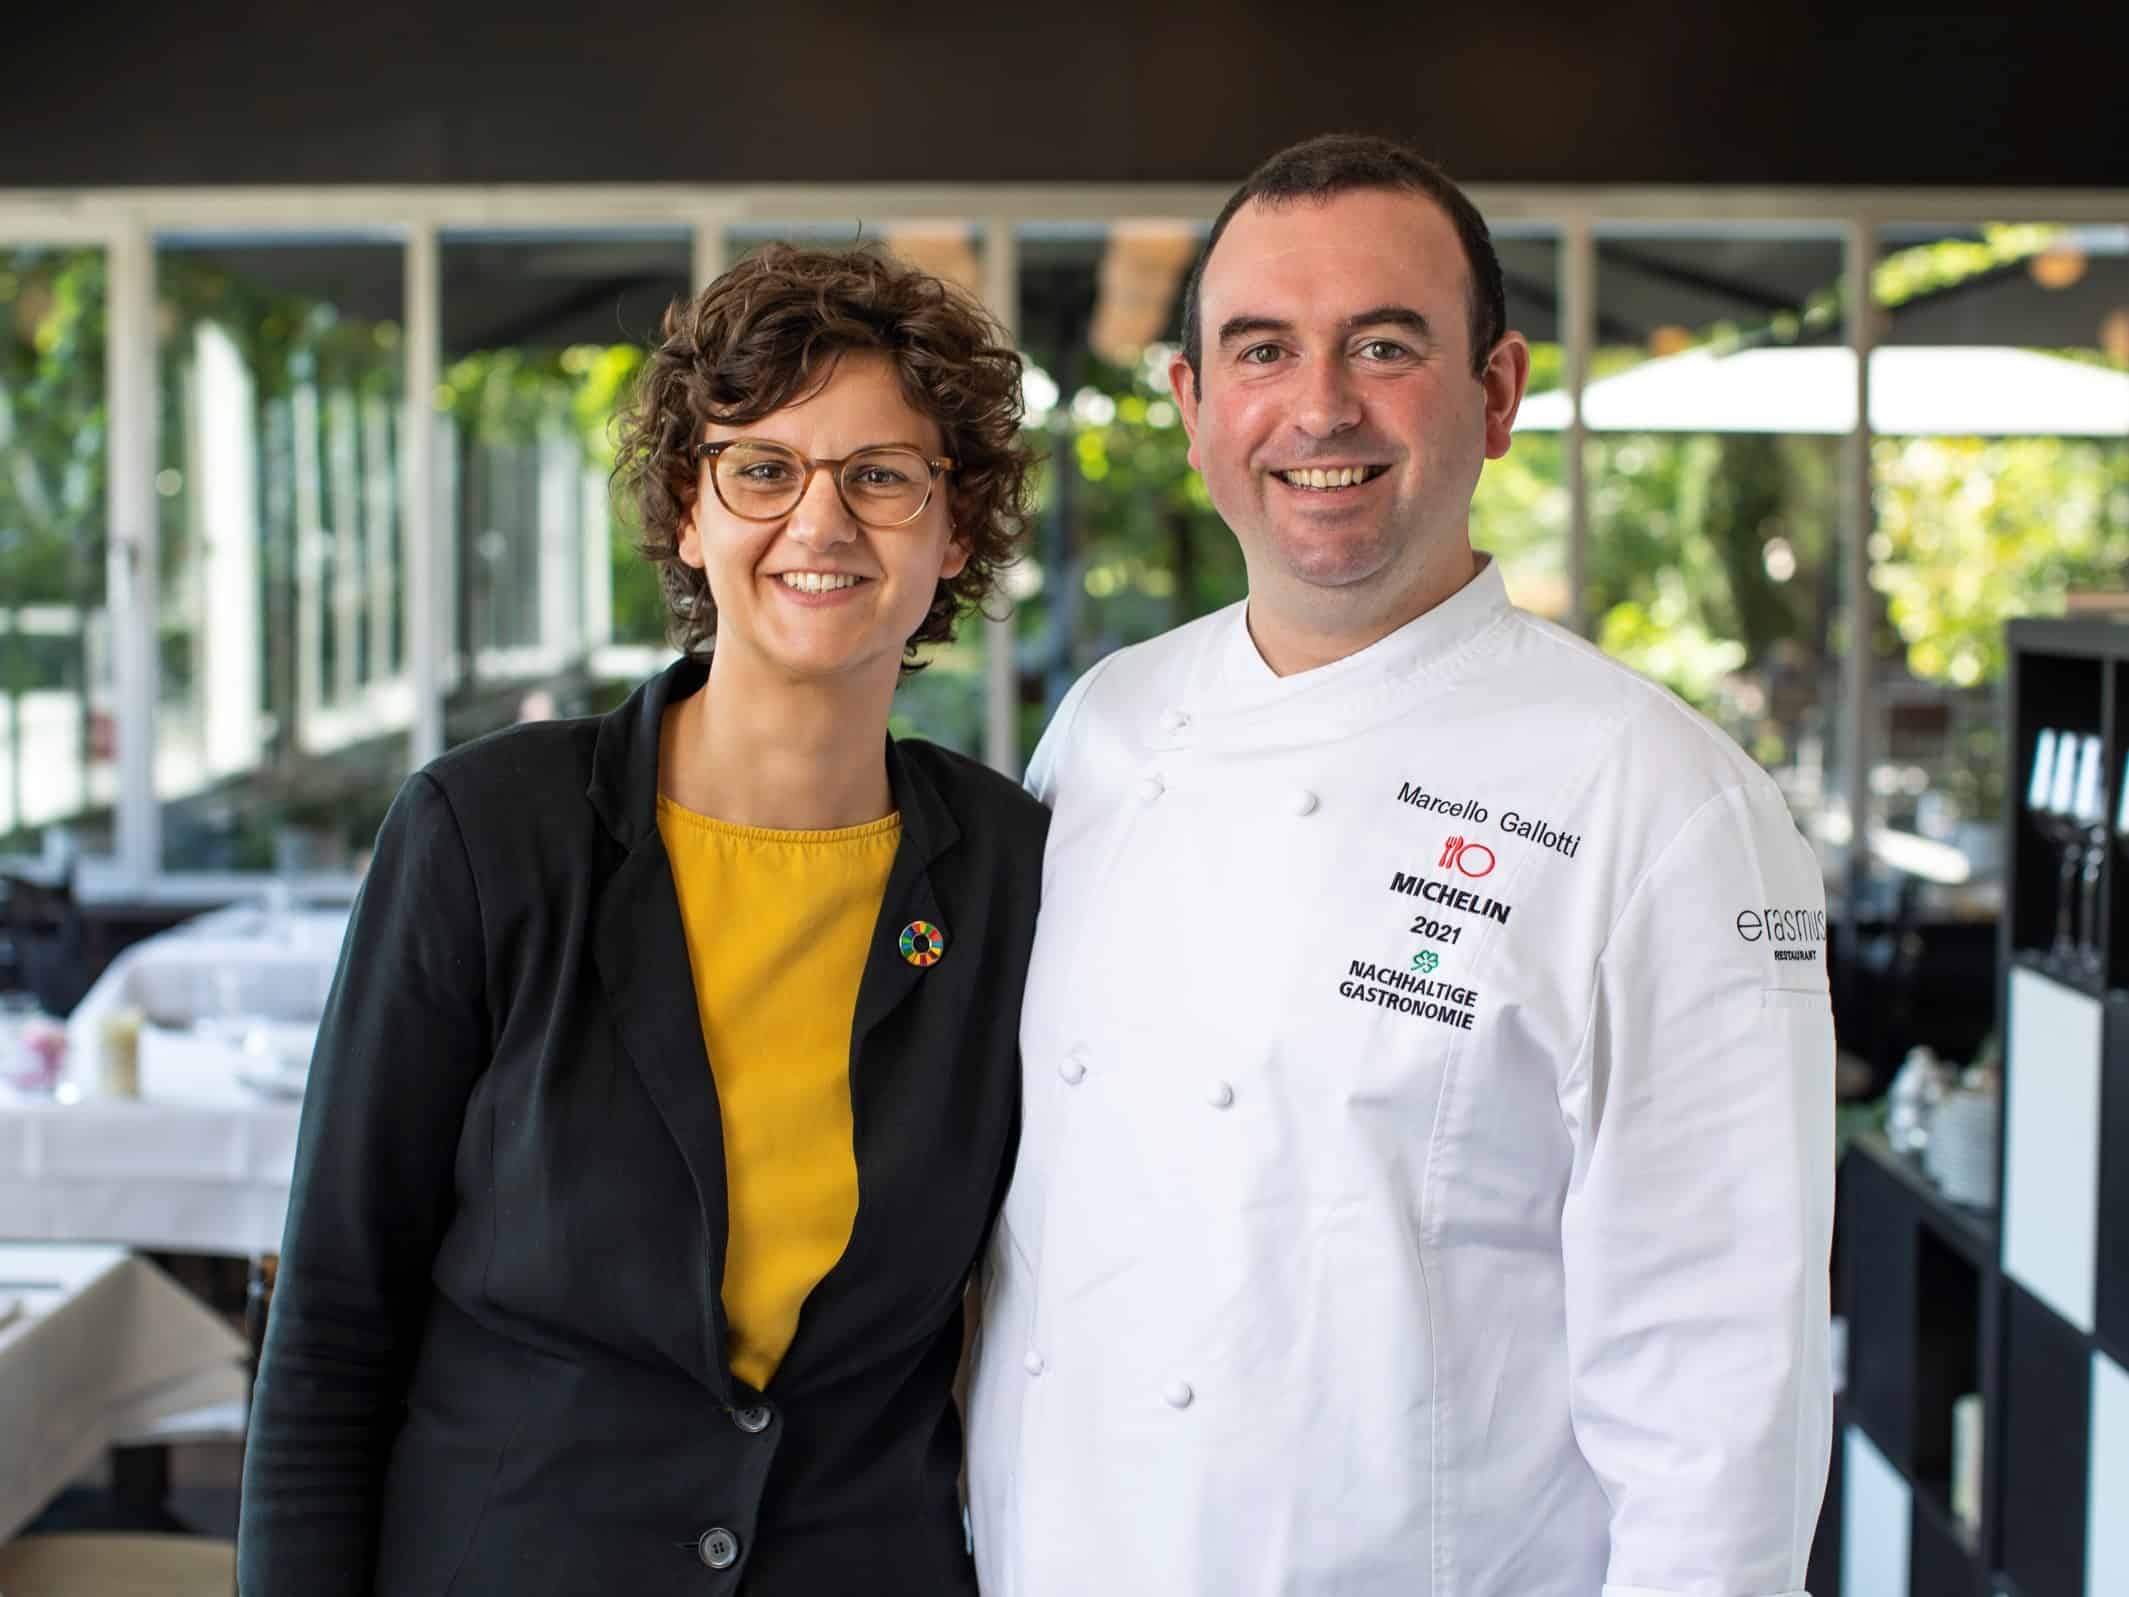 Restaurant erasmus erhält METRO Preis für nachhaltige Gastronomie 2021